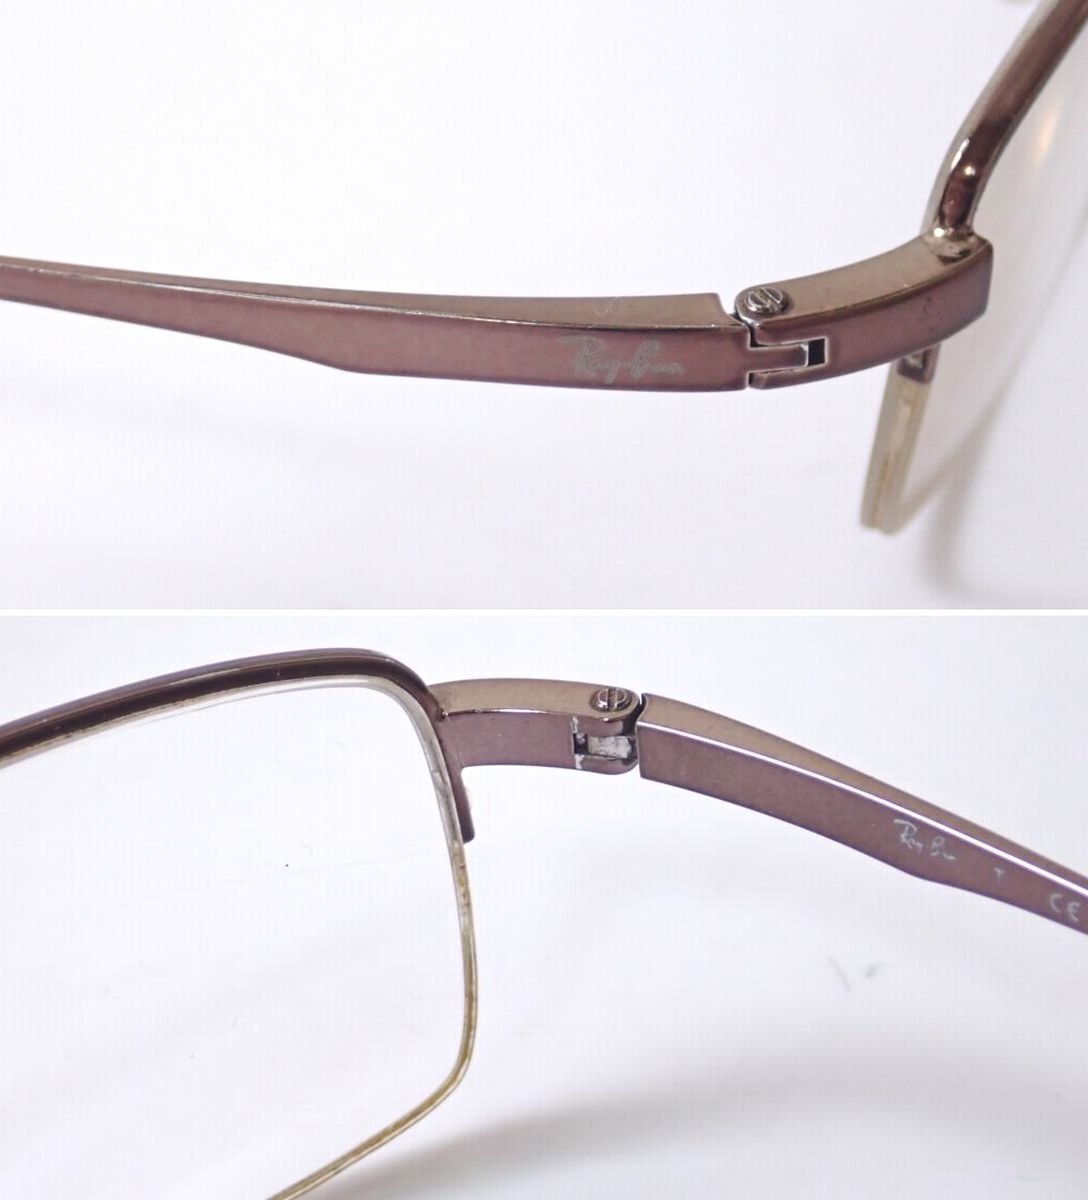 ★Ray-Ban/...  очки  / оправа для очков  RB6178 2511/ коричневый цвет / чистый / металлический   рама / половина  обод &1944500034